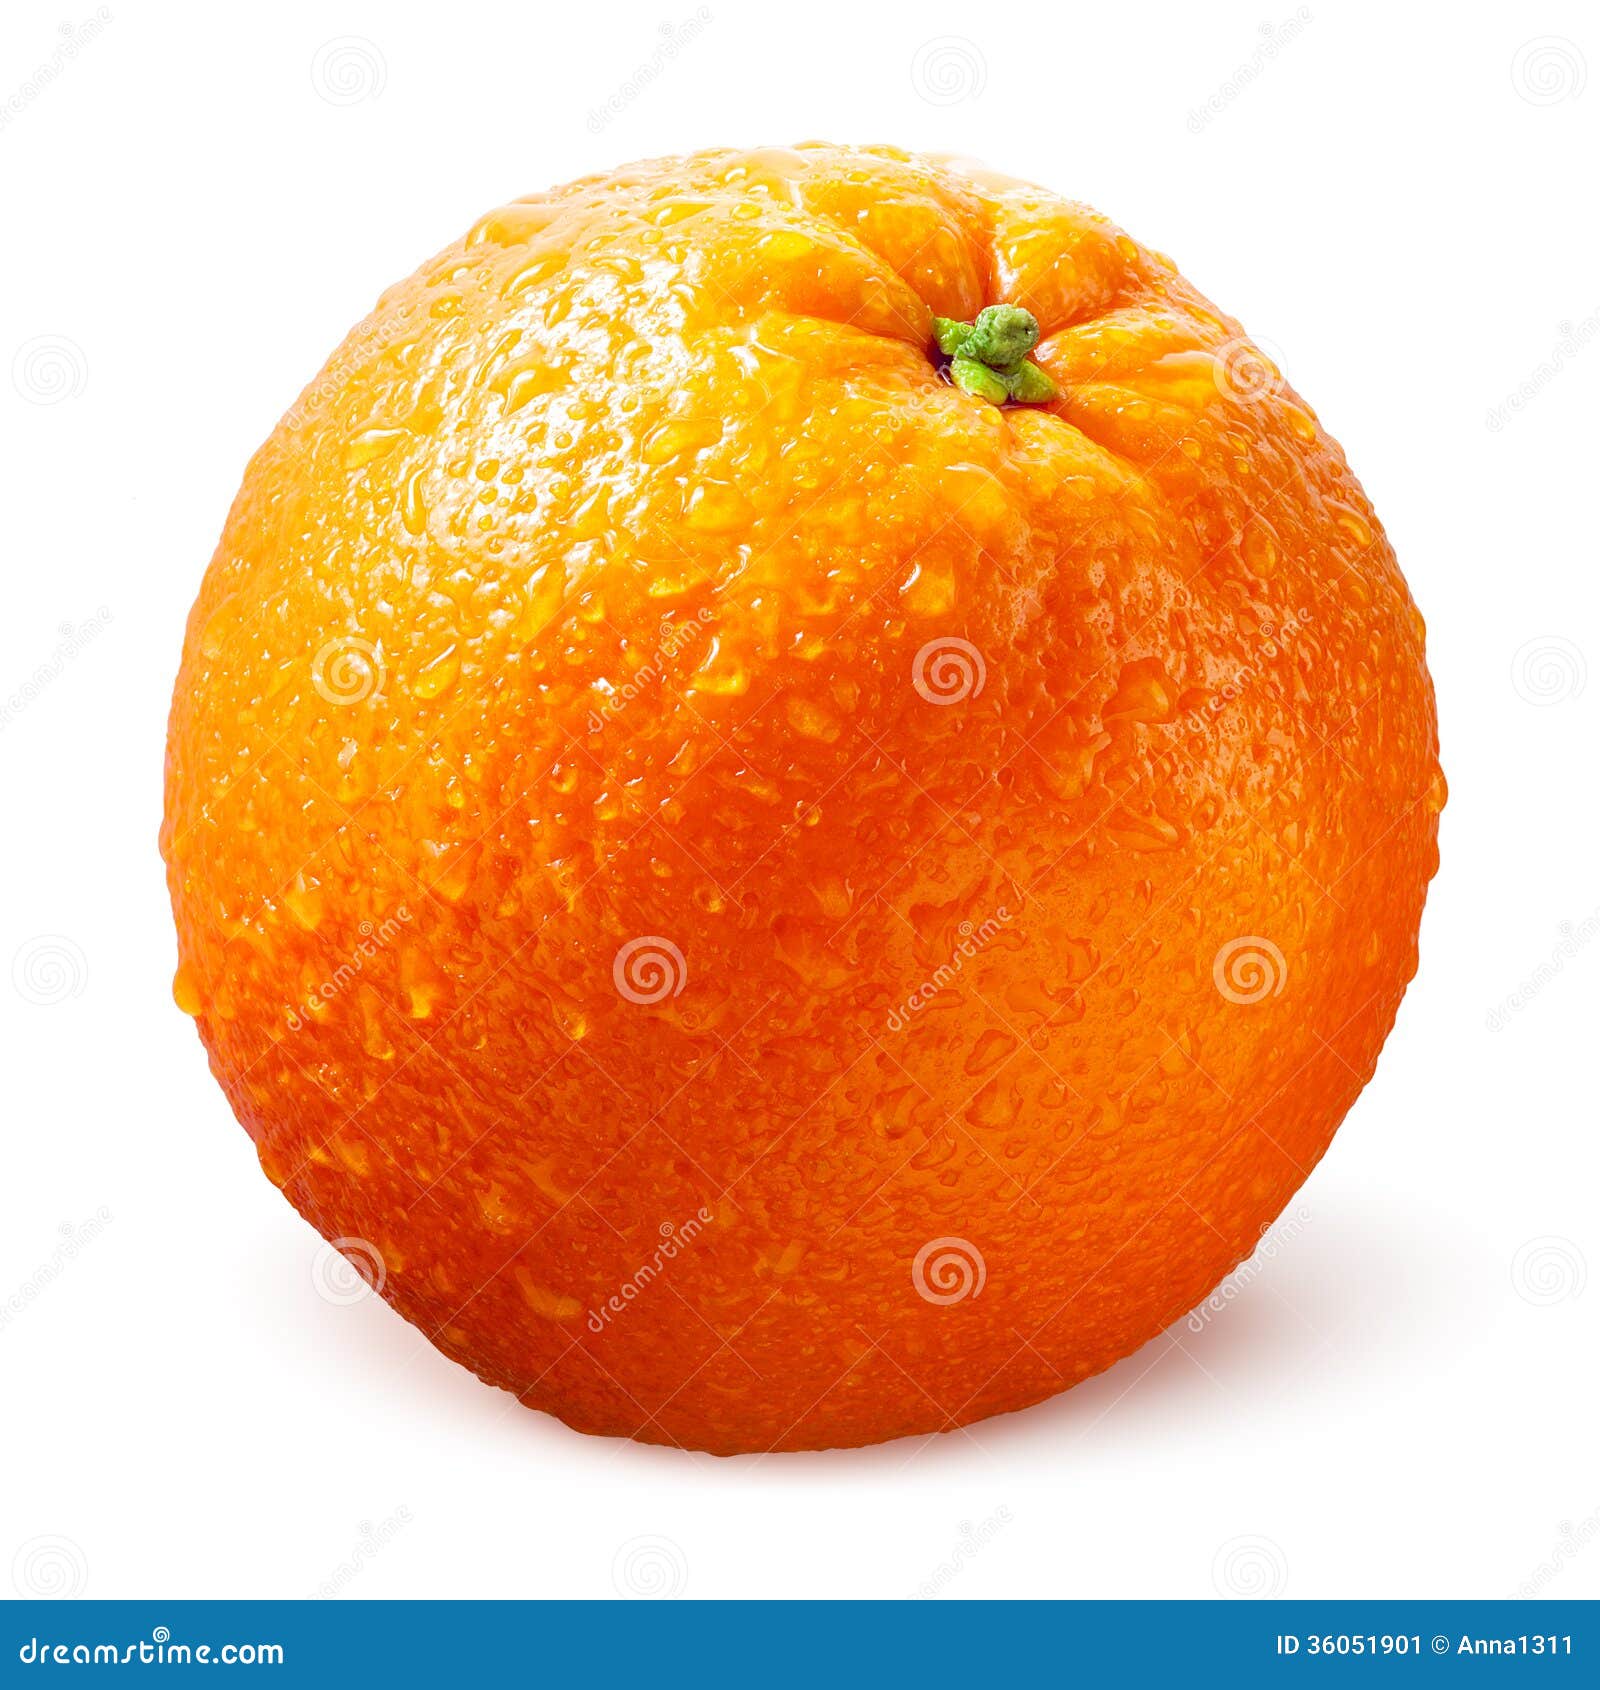 Xem bức ảnh tuyệt đẹp về trái cam sành trên nền trắng. Điều đó sẽ khiến bạn thực sự hào hứng với sự tươi mới, màu sắc tươi sáng và nặng nề, đầy đủ dinh dưỡng của trái cam sành.